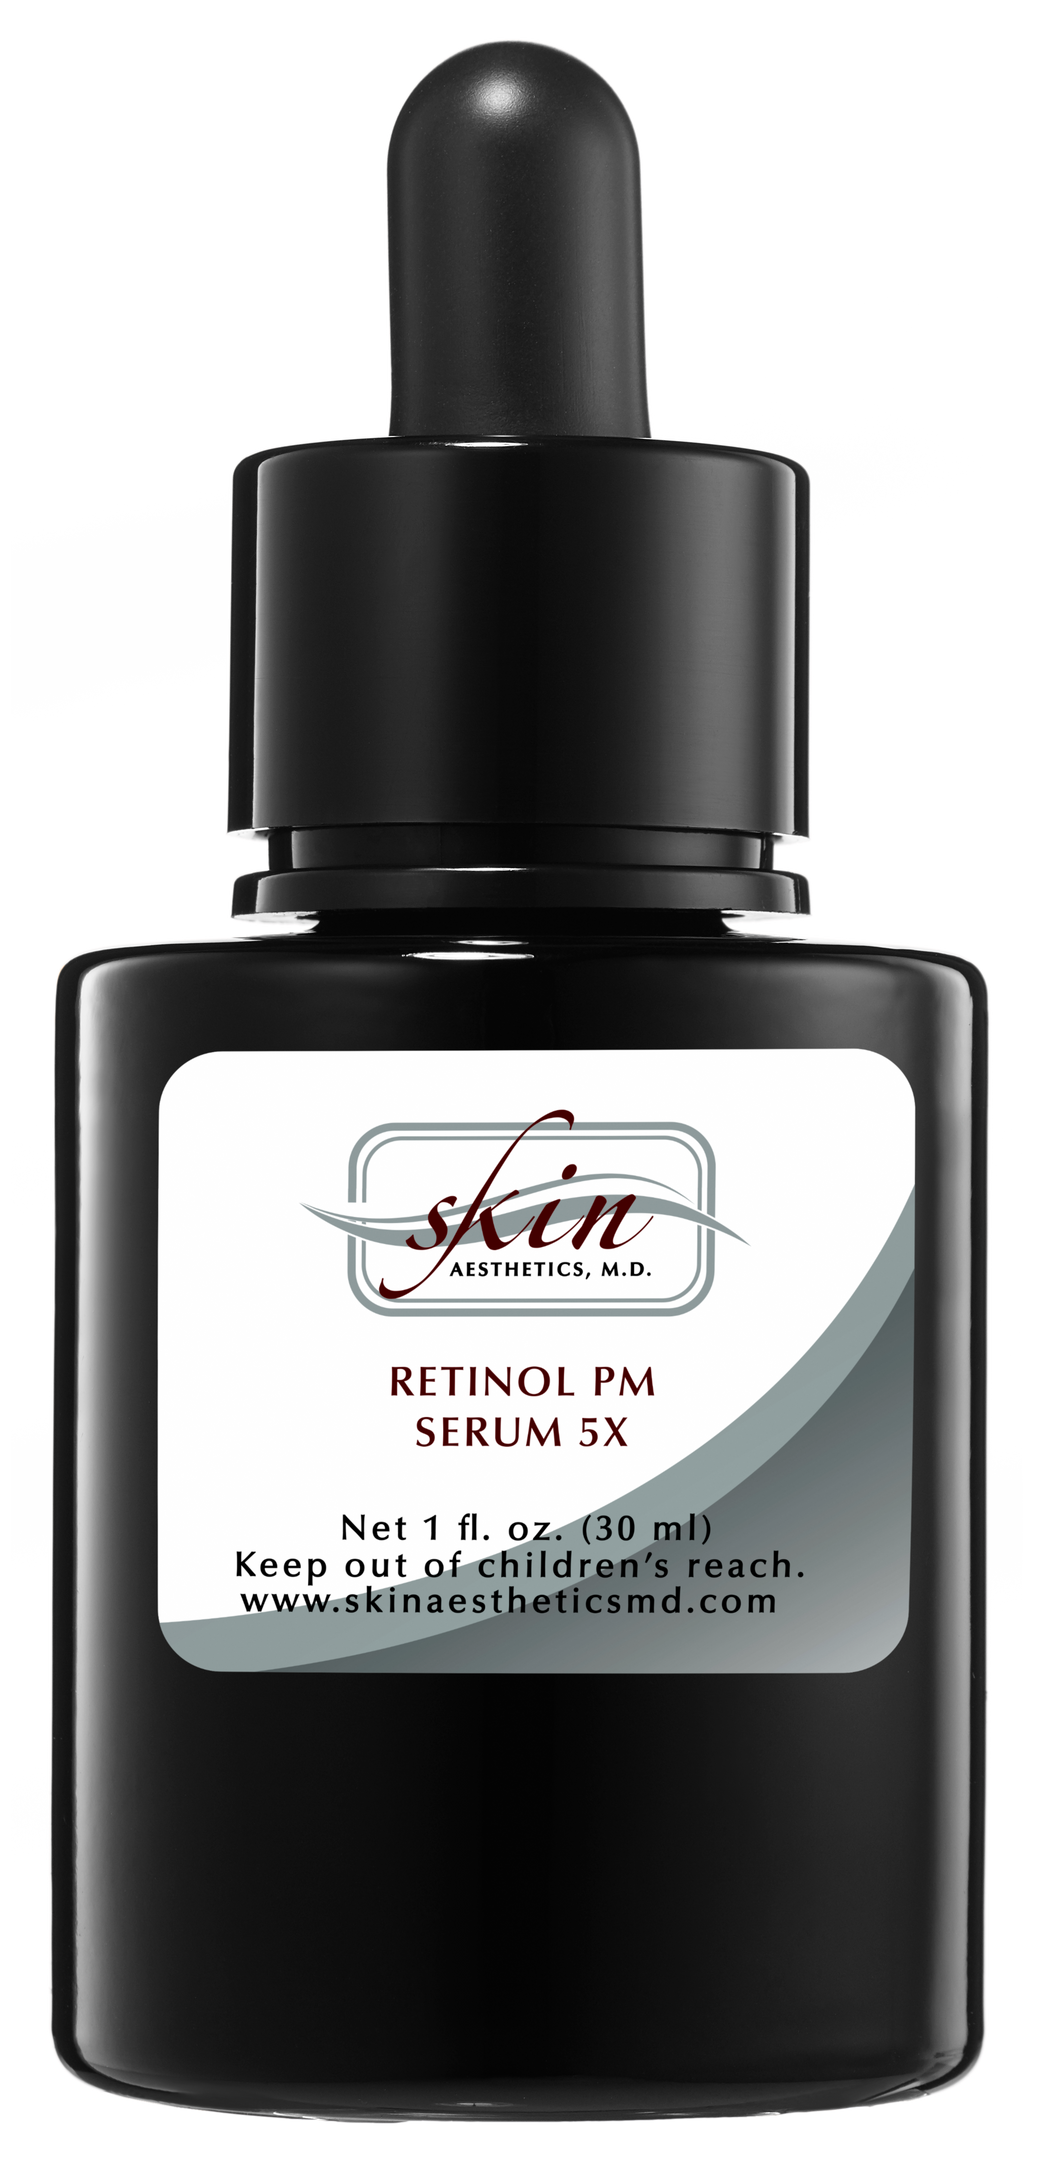 Retinol PM Serum 5x